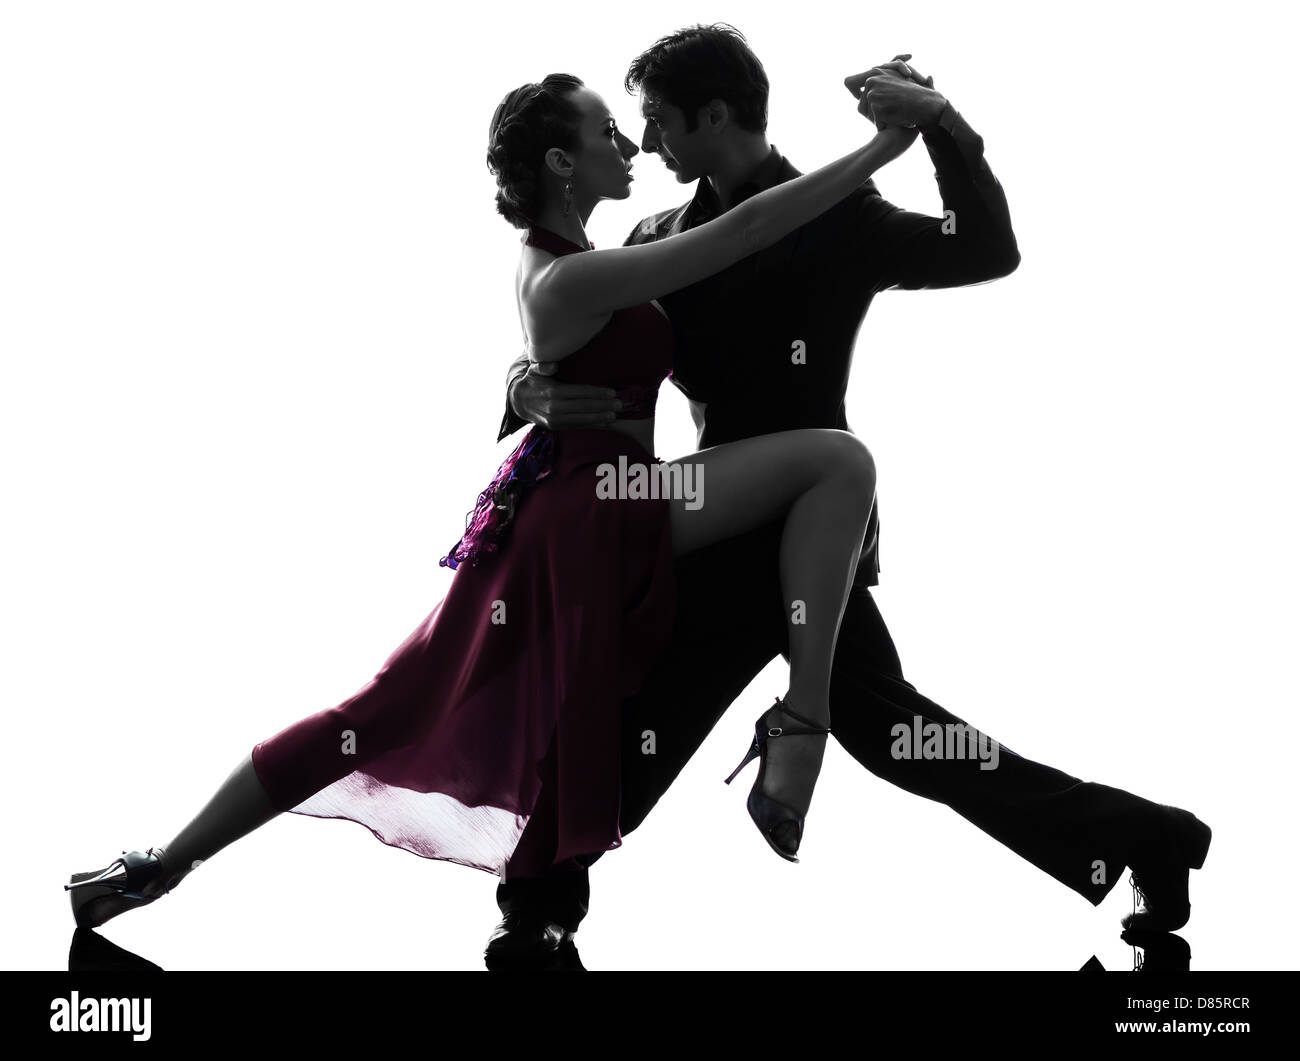 Un couple homme femme ballroom dancers laughing en silhouette studio isolé sur fond blanc Banque D'Images